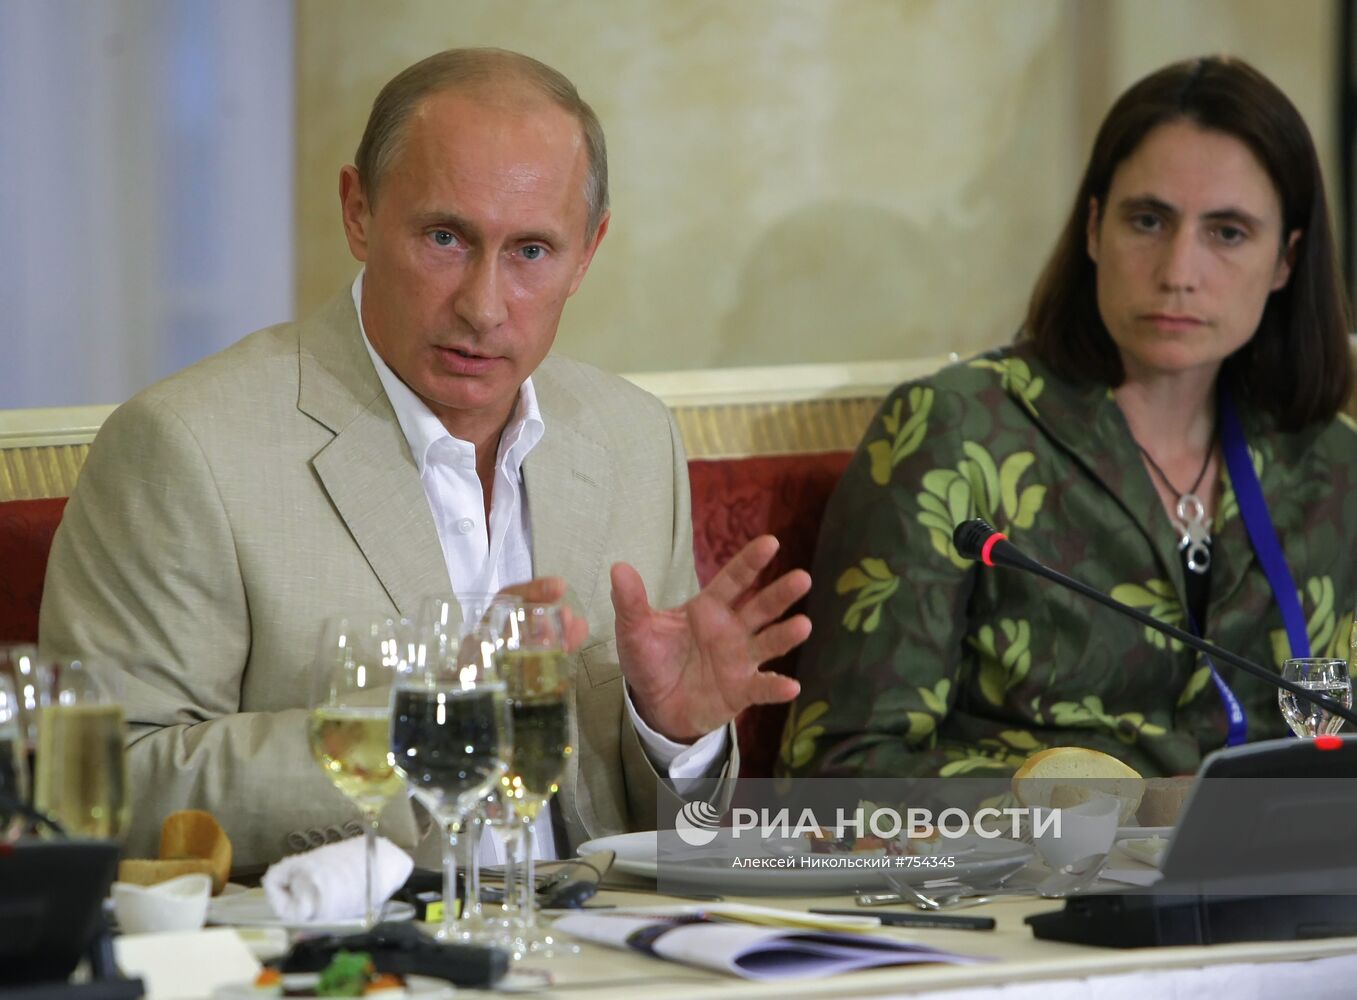 Владимир Путин встретился с членами дискуссионного клуба "Валдай